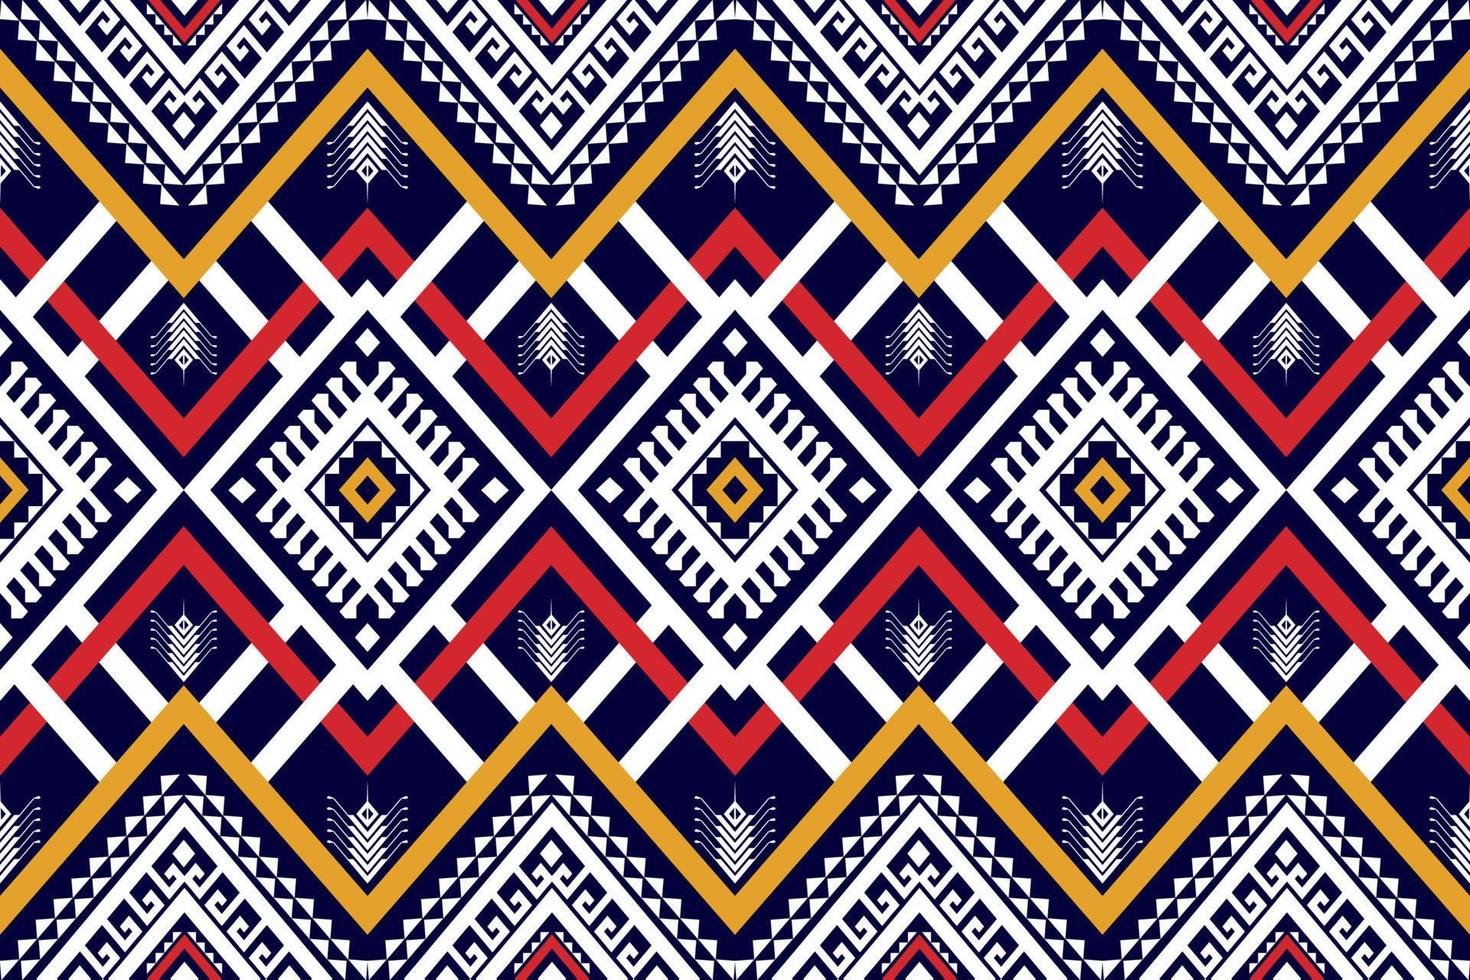 abstrato geométrico étnico sem costura padrão tradicional. estilo tribal. nativo listrado. design para plano de fundo, tapete,papel de parede,vestuário,embrulho,batik,tecido,ilustração,bordado. vetor